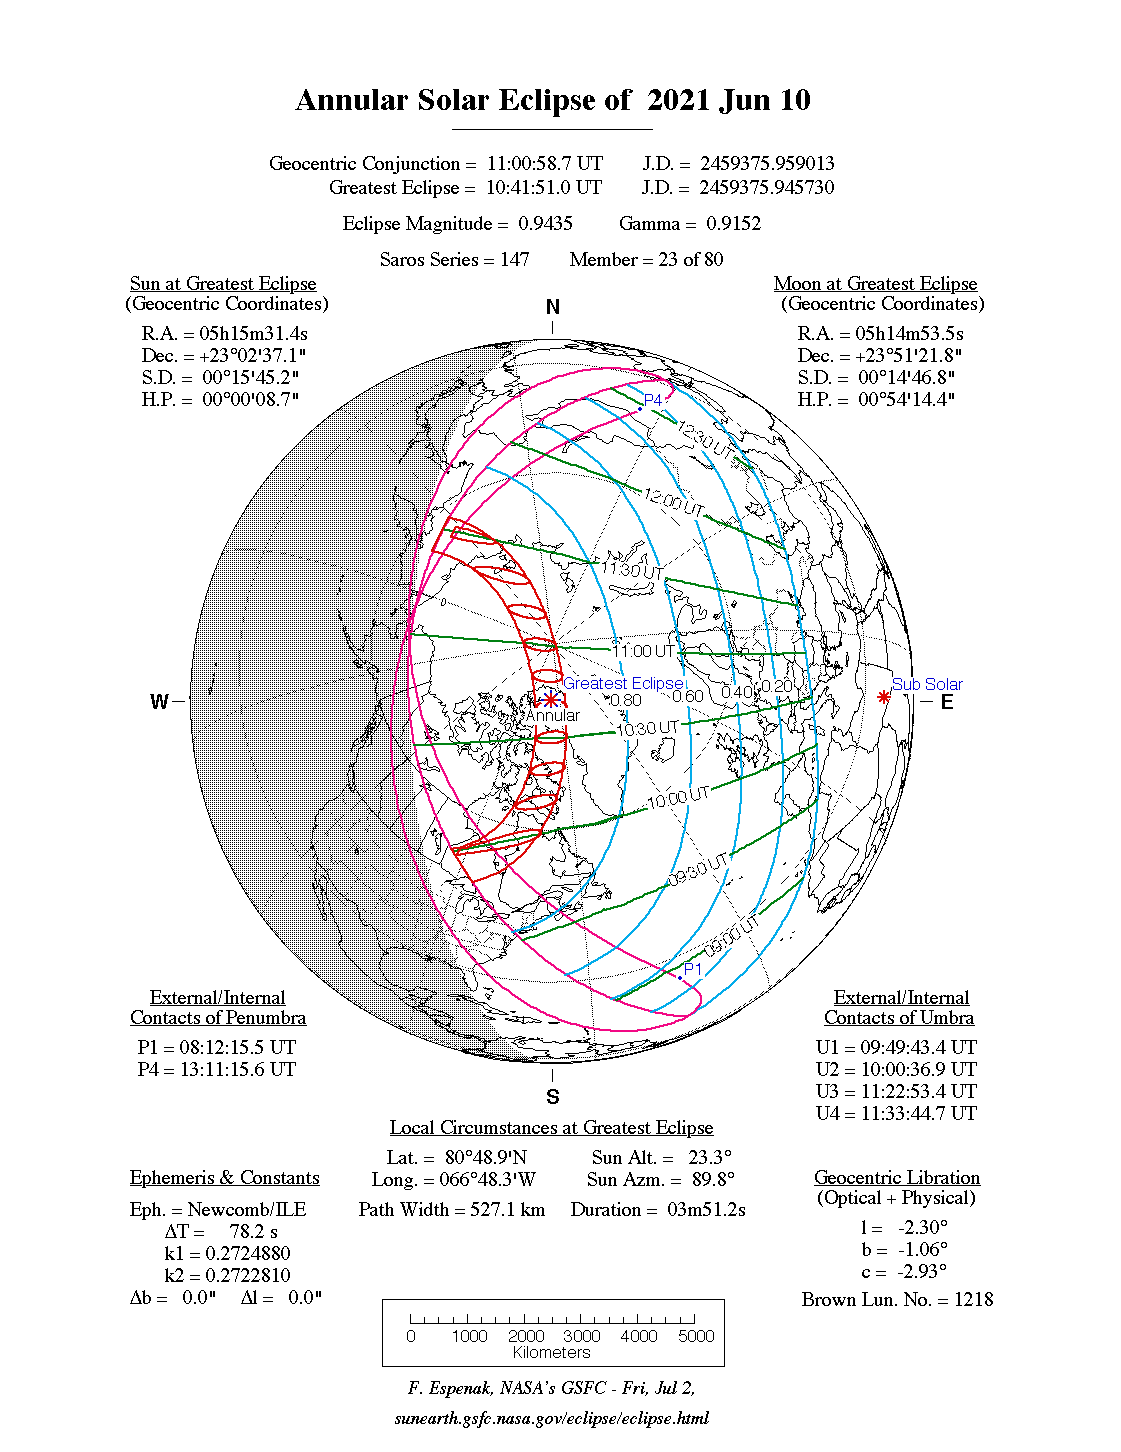 Verlauf der Ringförmigen Sonnenfinsternis am 10.06.2021